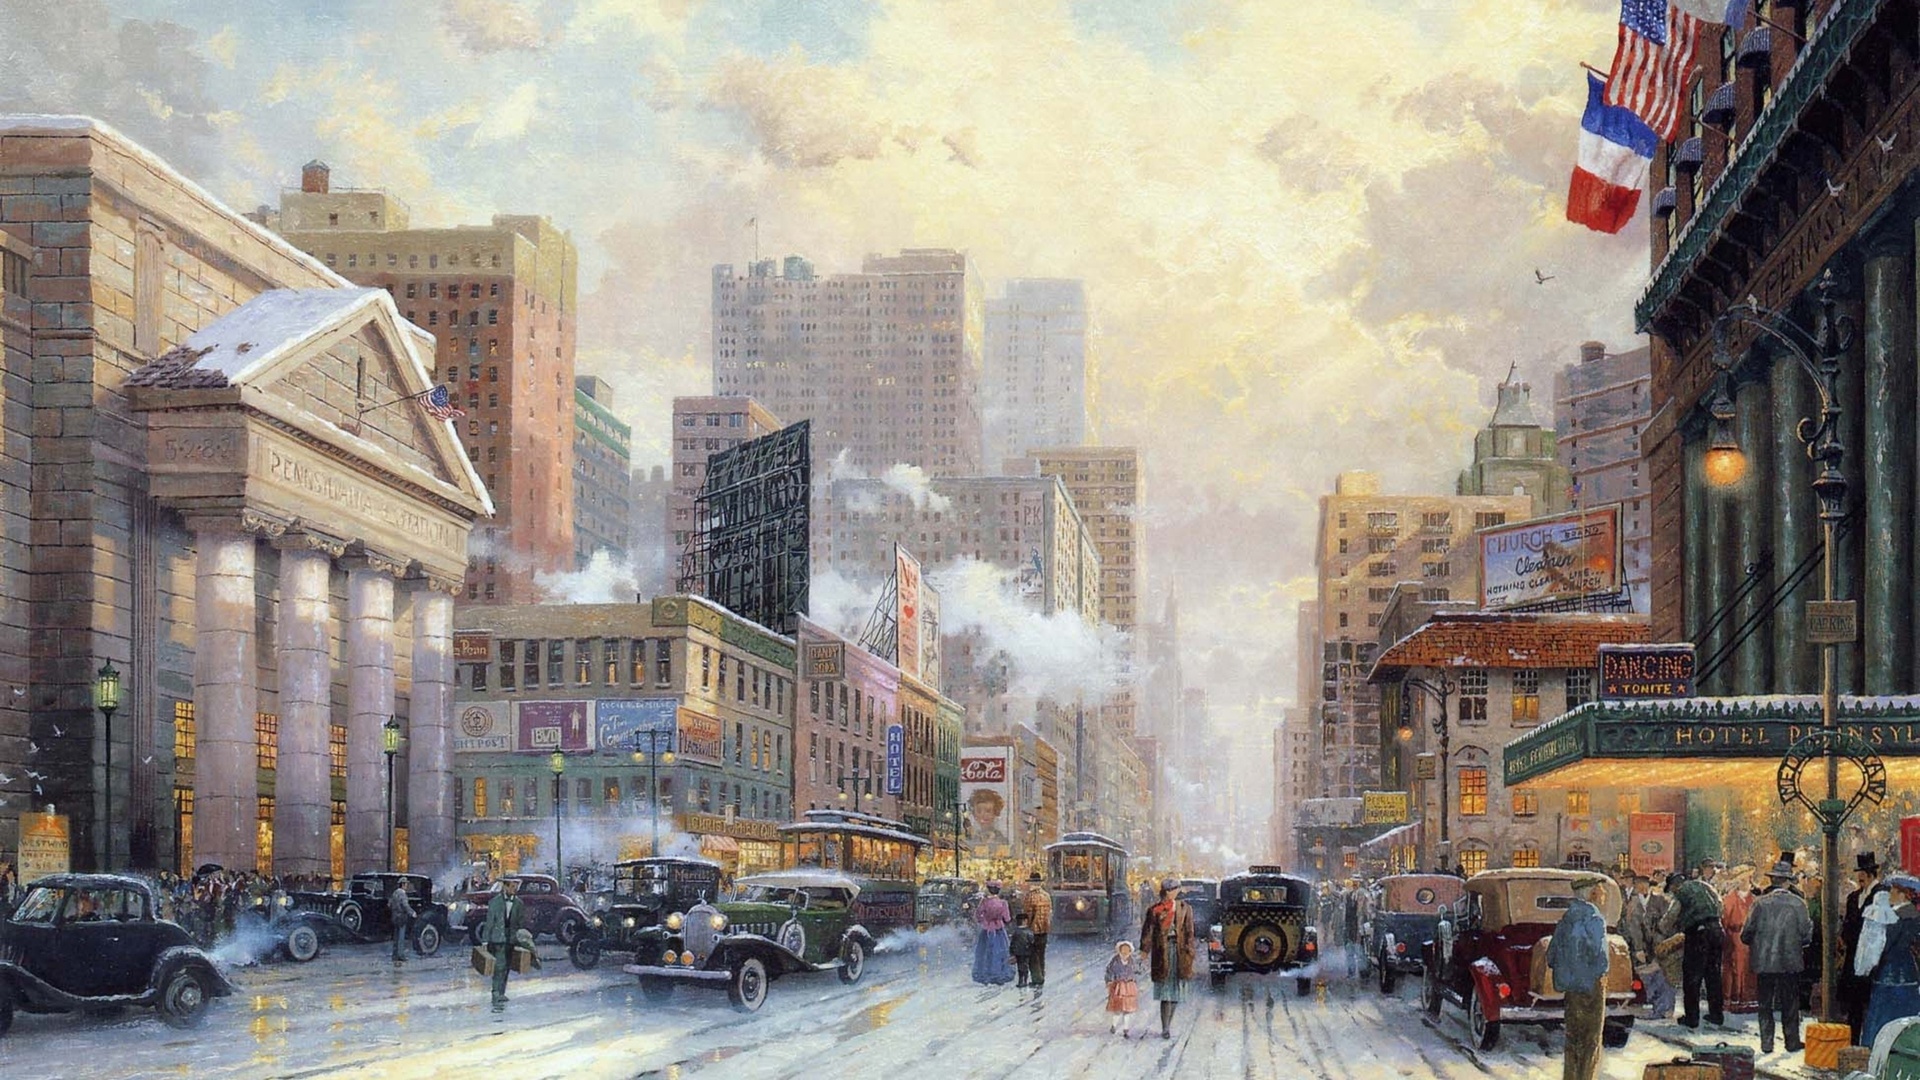 painting, Thomas kinkade, city, winter, street, 1932, art, snow on seventh avenue, snow, new york